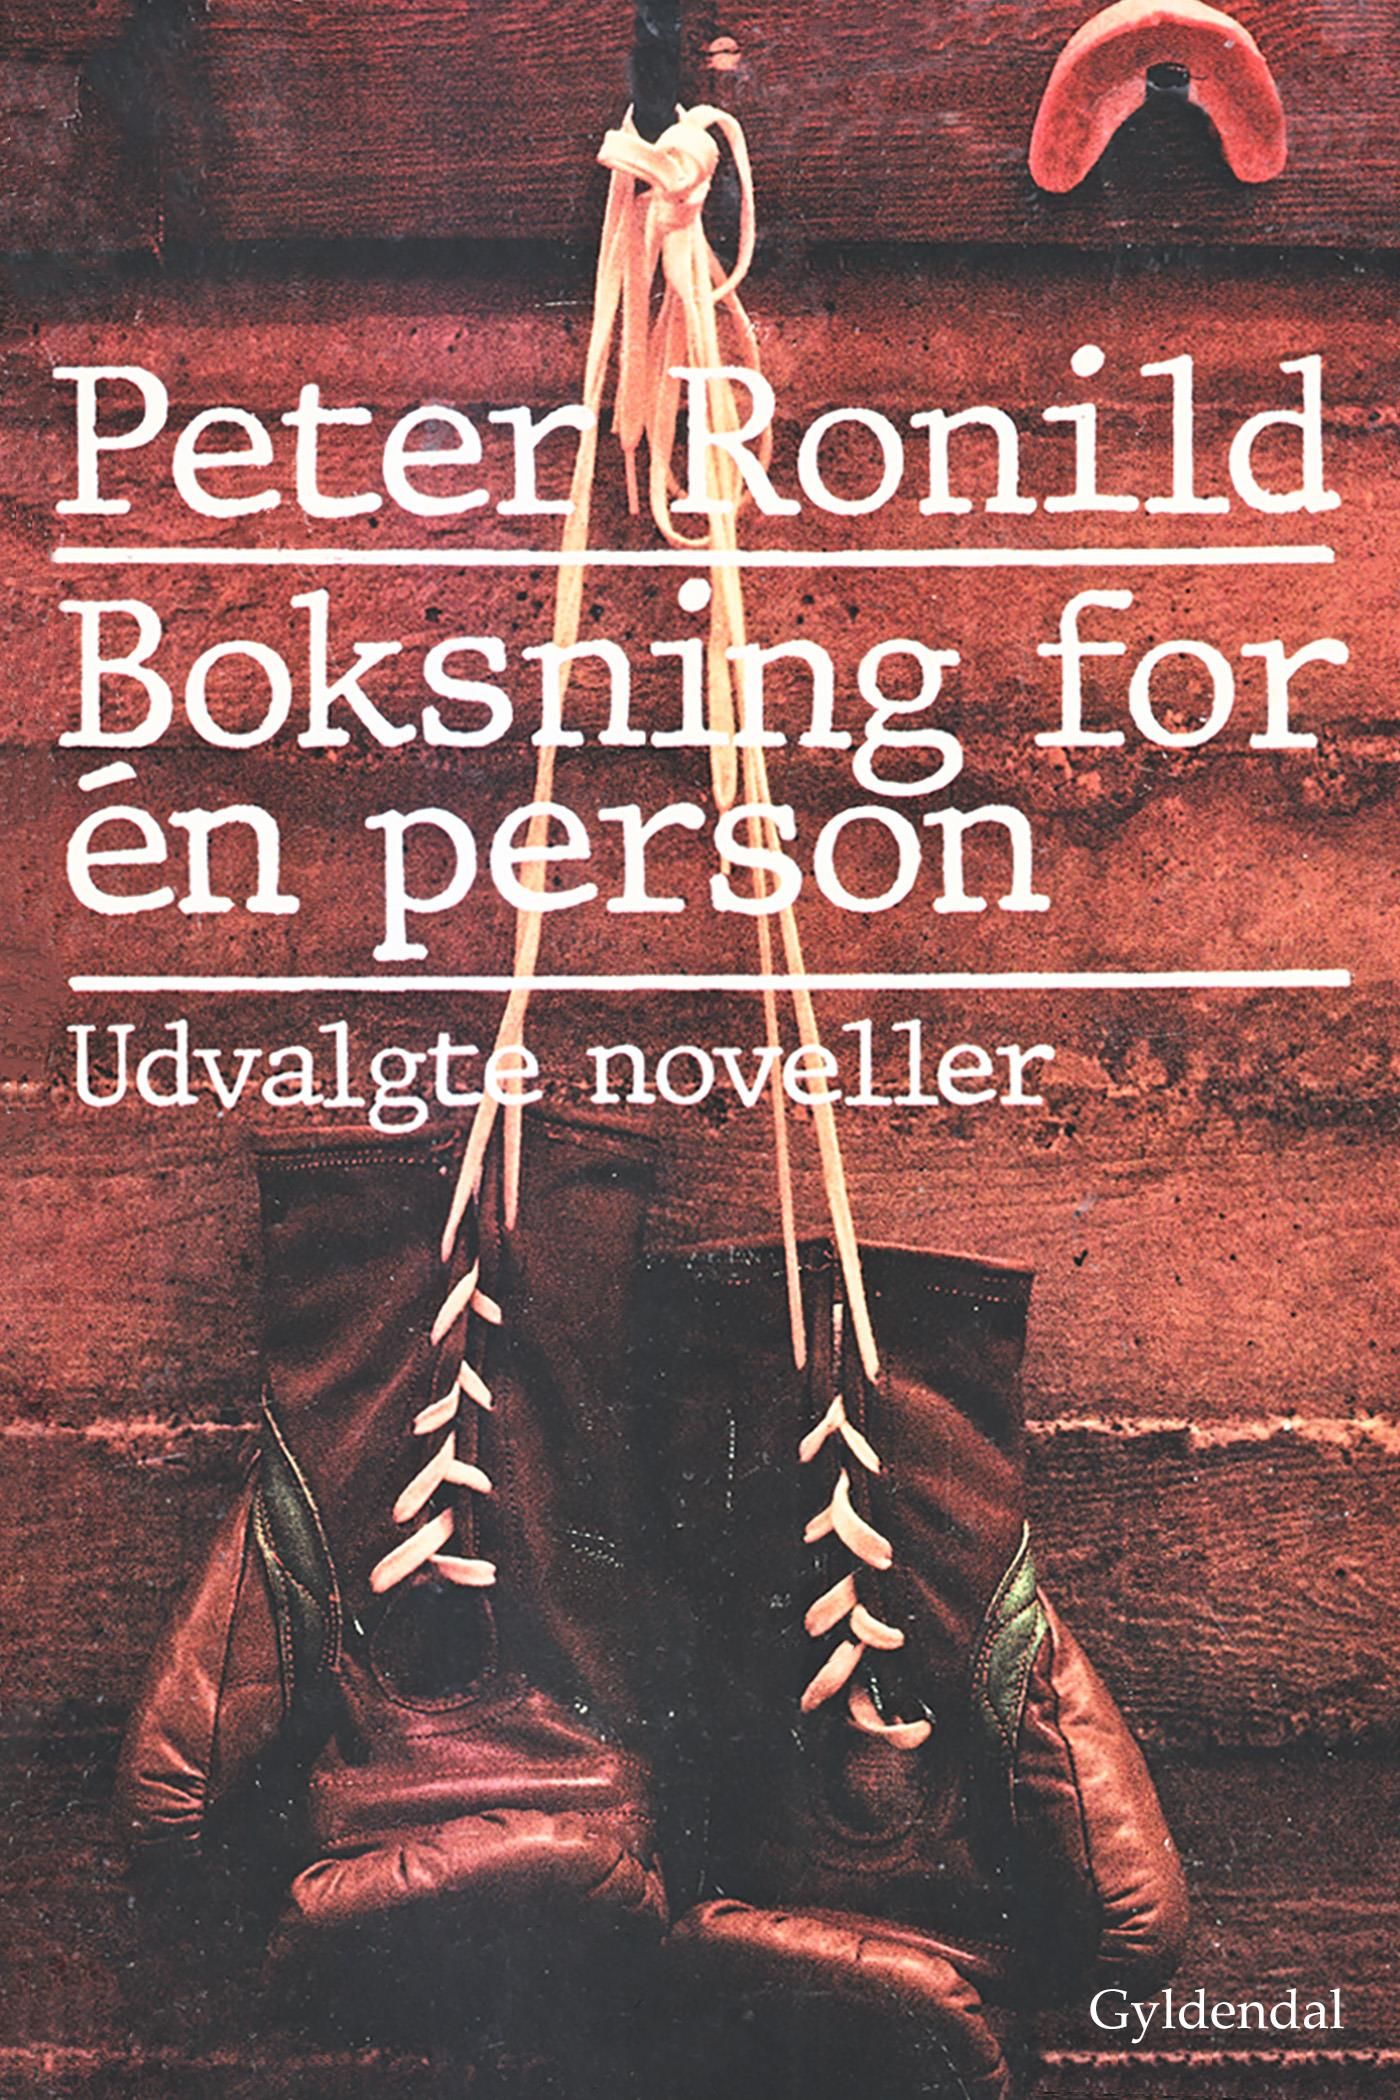 Boksning for én person, e-bog af Peter Ronild